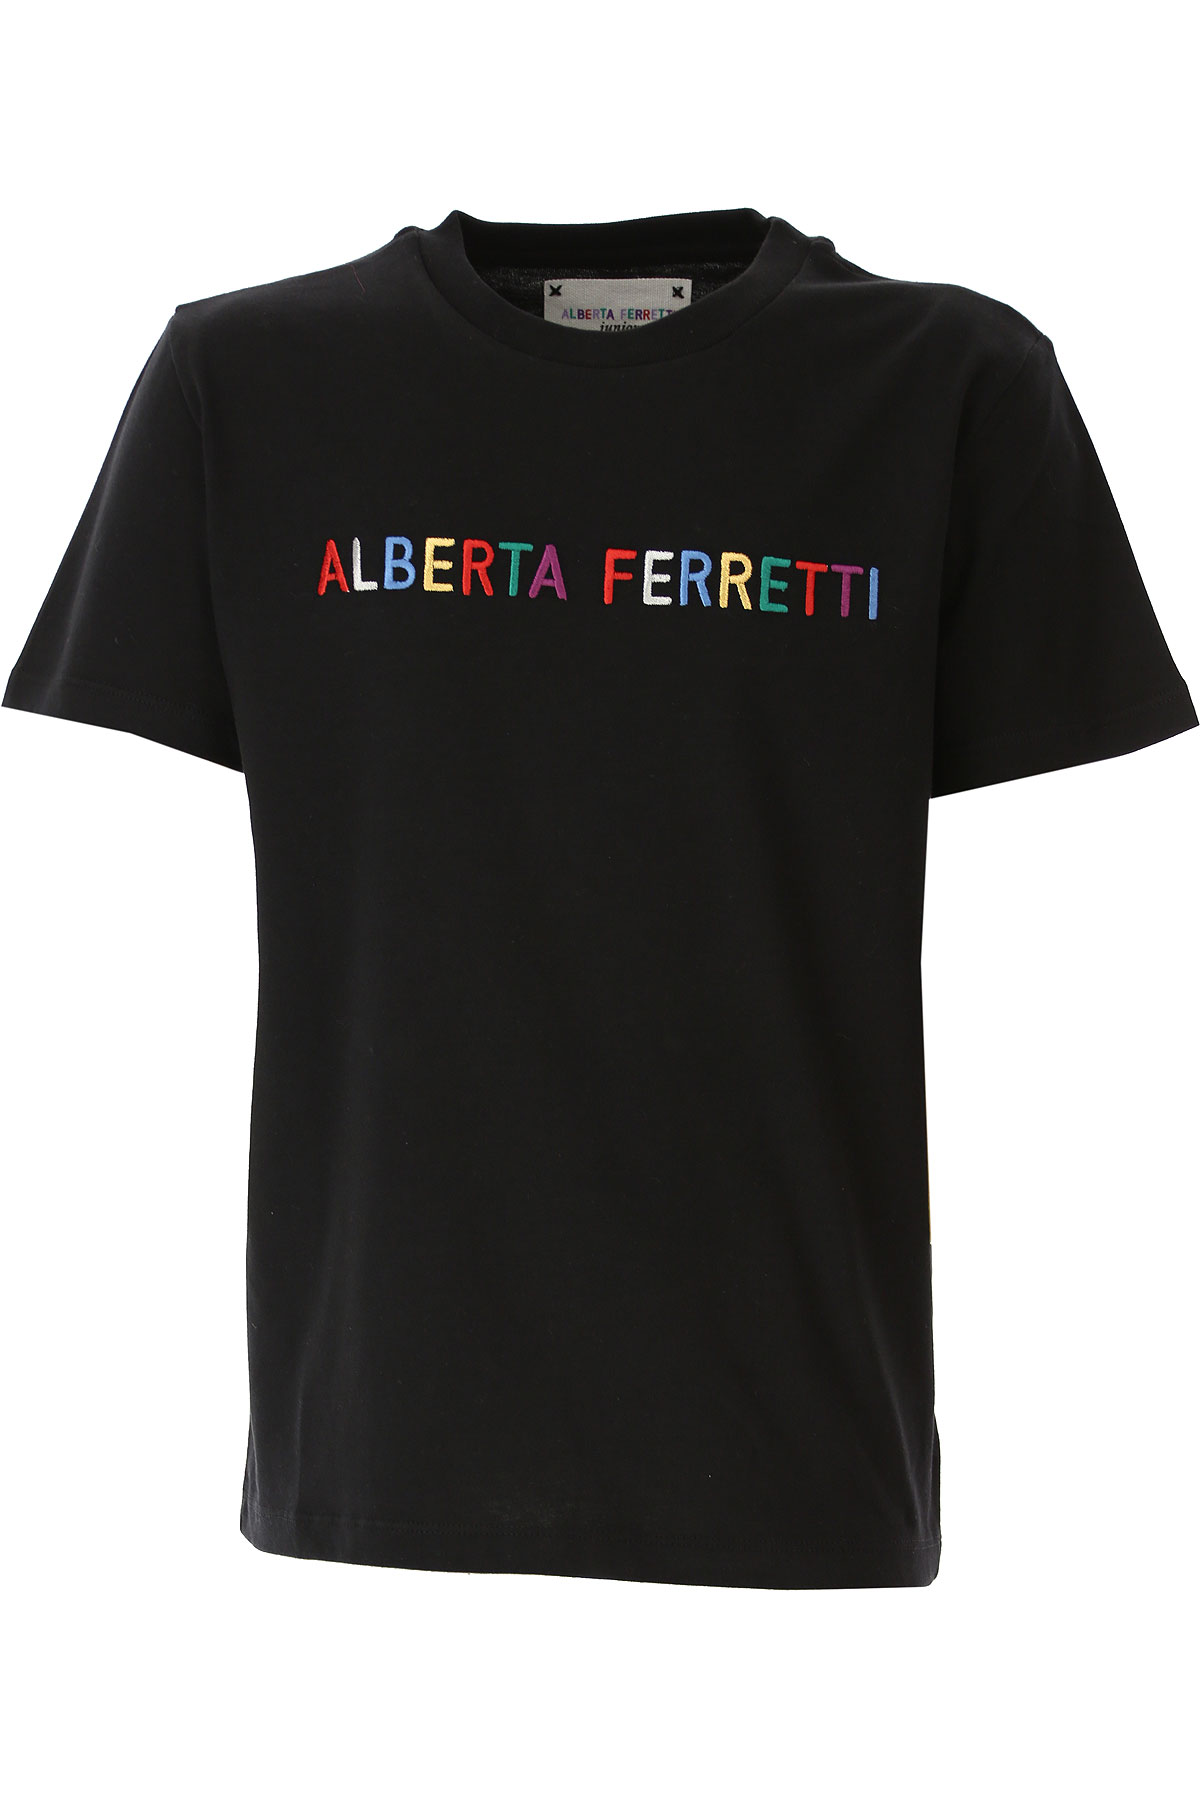 Alberta Ferretti Kinder T-Shirt für Mädchen Günstig im Sale, Schwarz, Baumwolle, 2017, 10Y 12Y 4Y 8Y